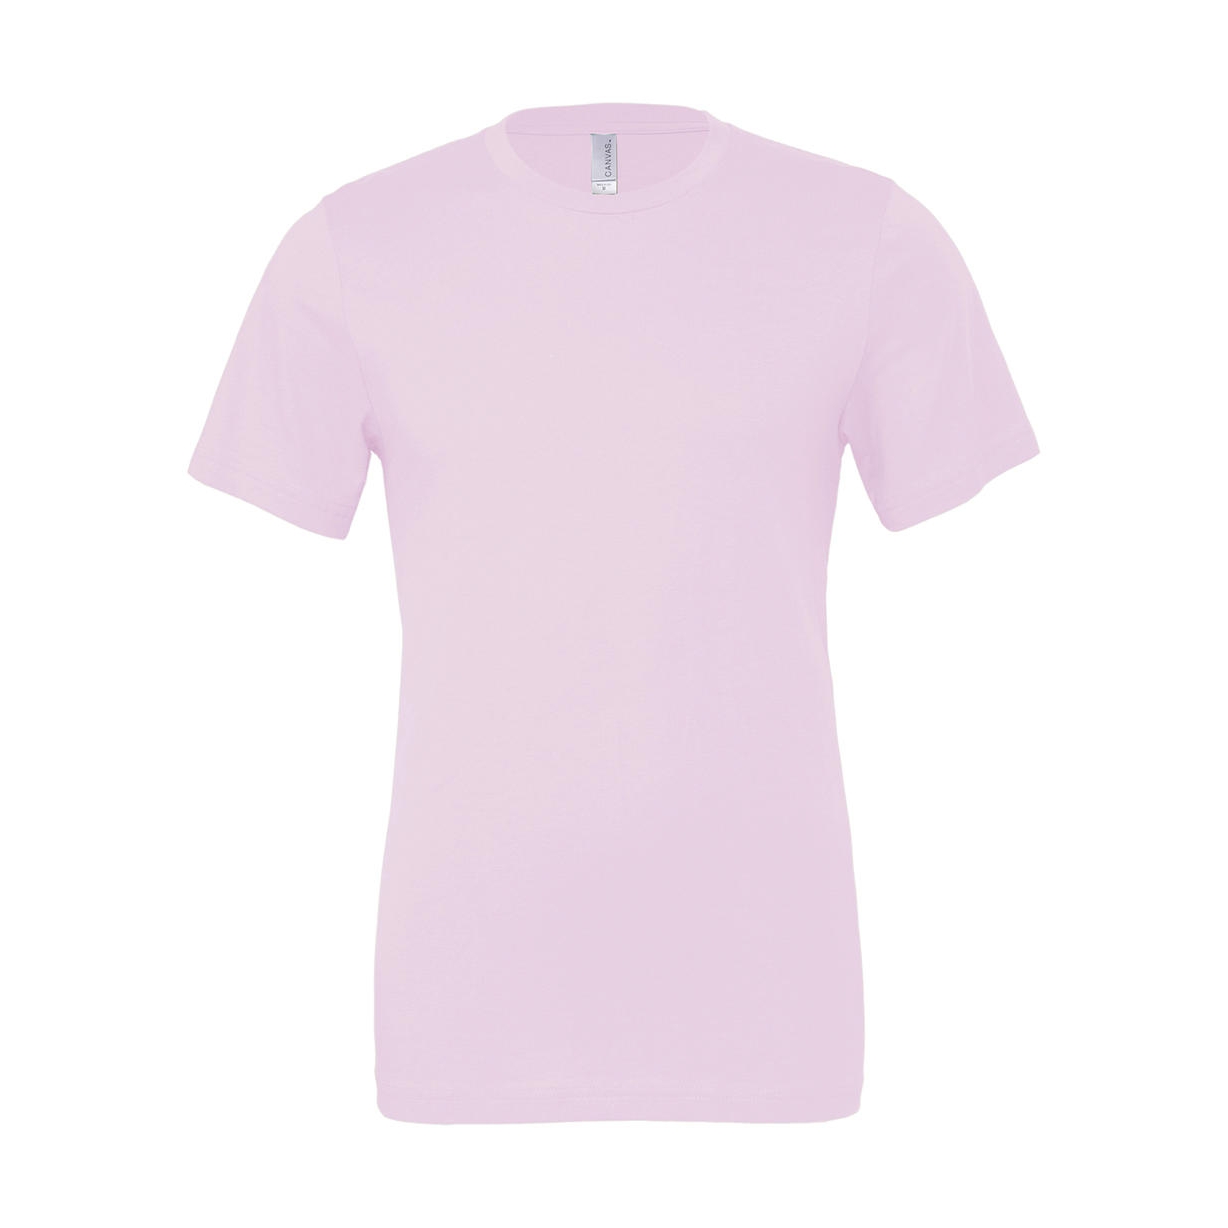 Tričko Bella Jersey - světle růžové, S